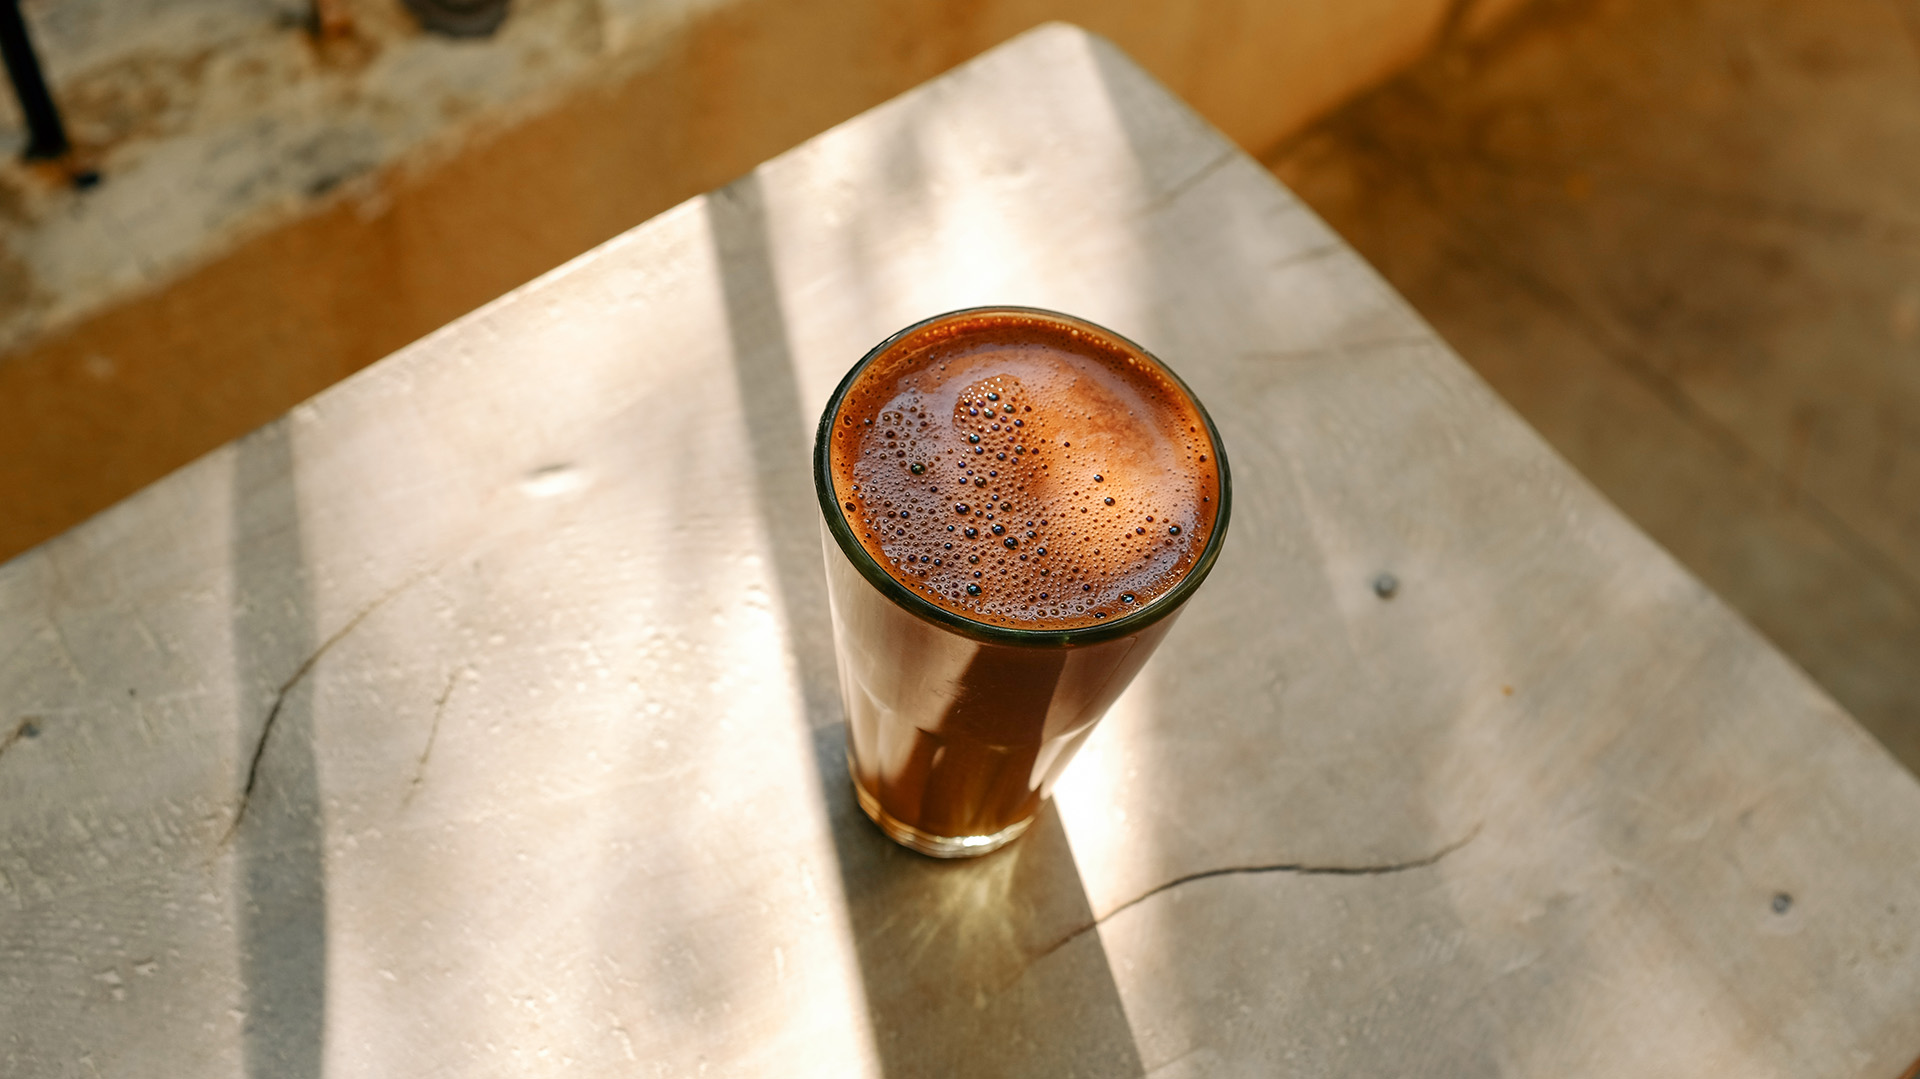 La materia prima y la conservación del café son algunas de las claves (Shutterstock)